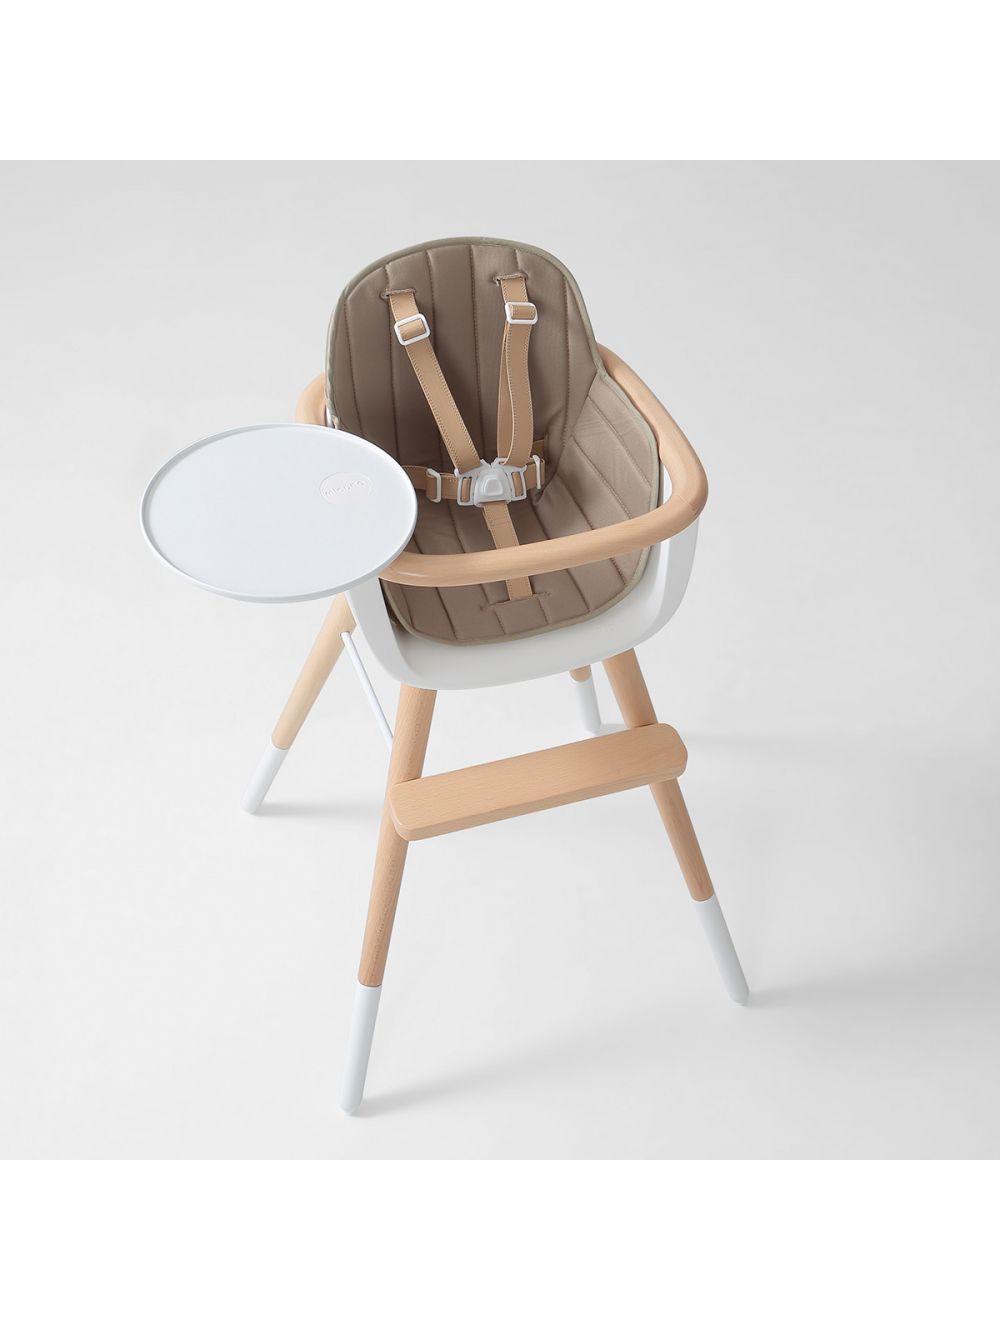 65x35cm) Baby Sitzauflage Polster Einlage Kissen